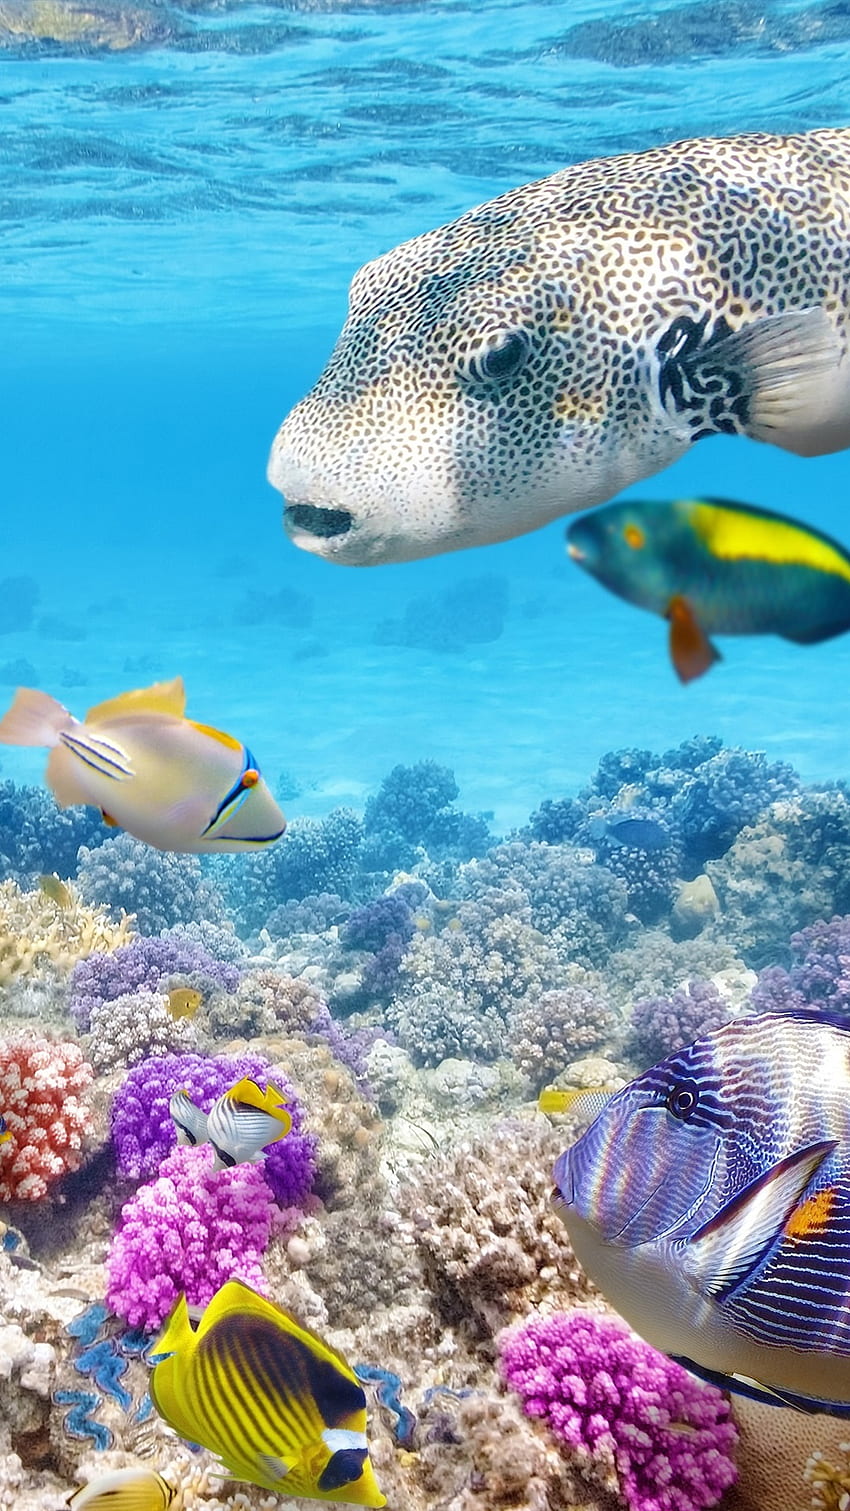 Rạn san hô là nơi sinh sống của vô số các sinh vật biển và cũng là nơi đem lại vẻ đẹp kỳ diệu cho thế giới dưới nước. Hãy khám phá bức ảnh tuyệt đẹp này và tìm hiểu thêm về sức sống của rạn san hô.